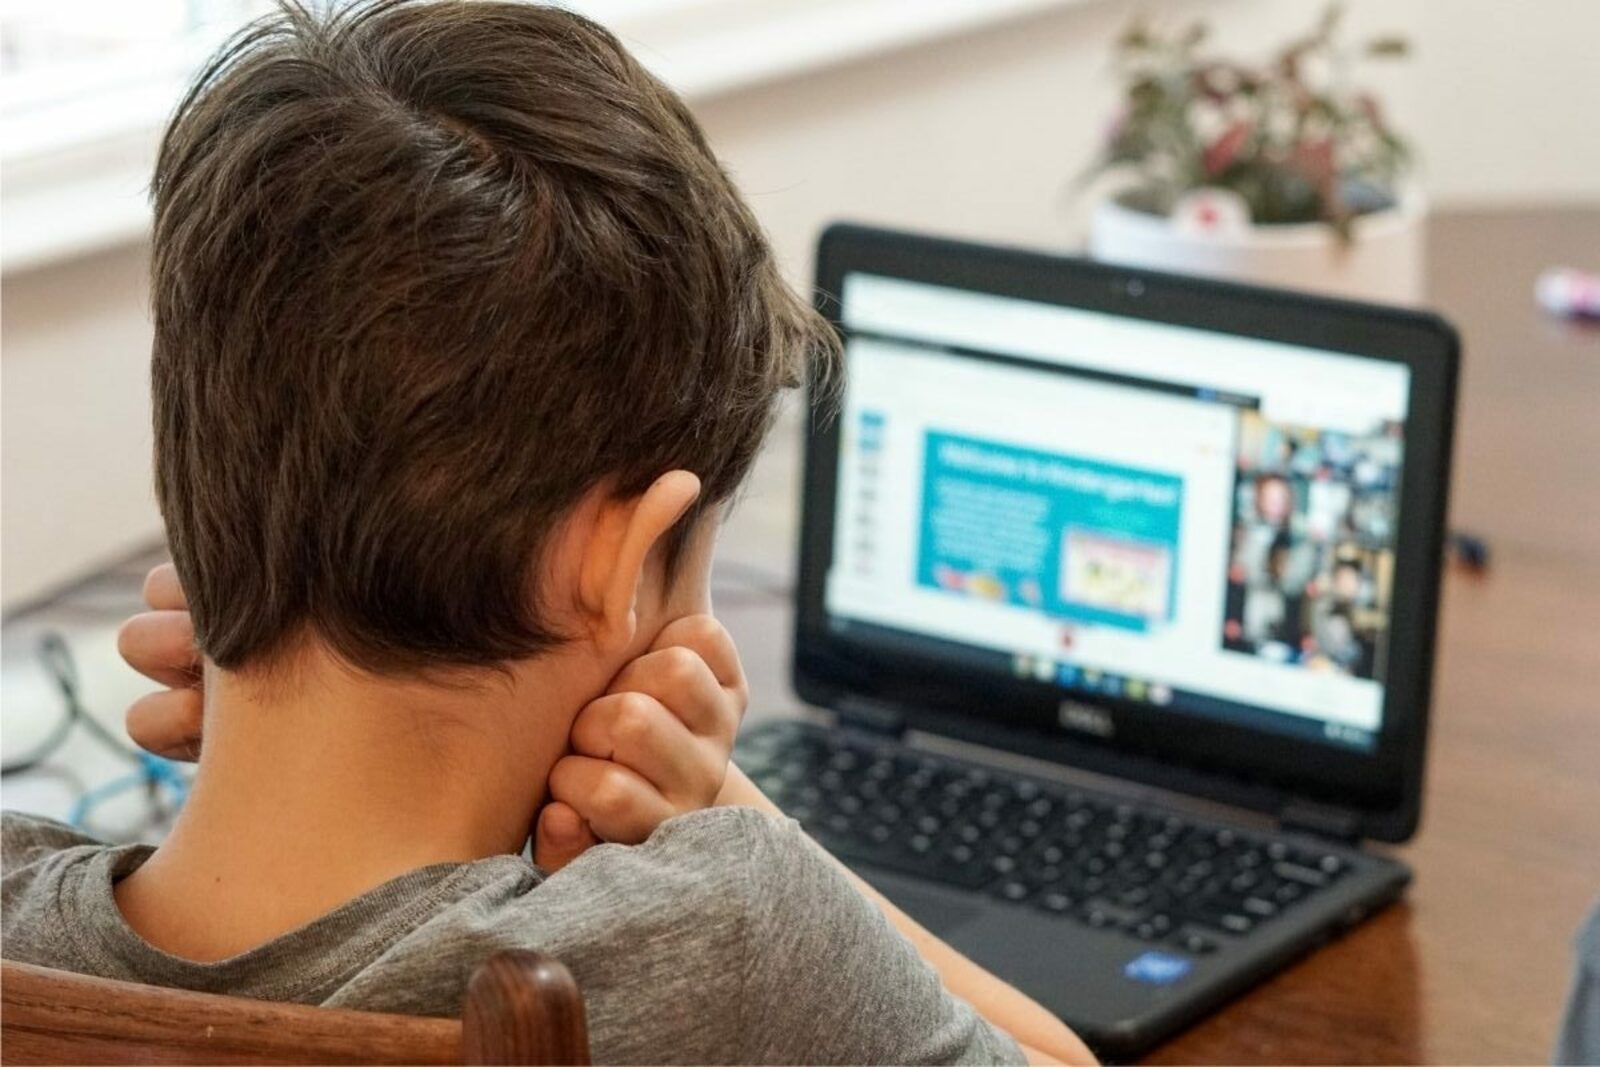 Эксперт из Башкортостана: Интернет может стать ловушкой для детей, из которой не все смогут выбраться без помощи психолога